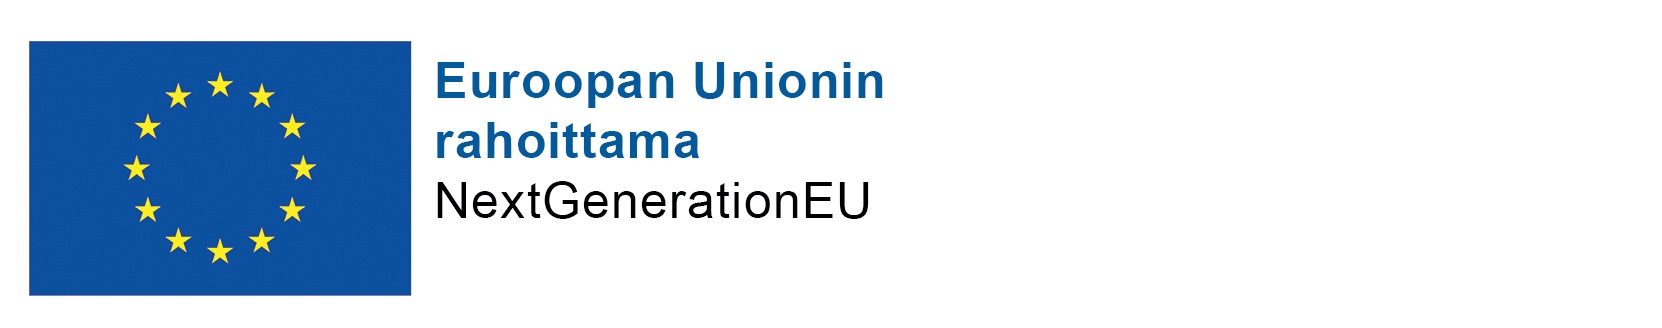 Euroopan Unionin rahoittama, NextGenerationEU; logo